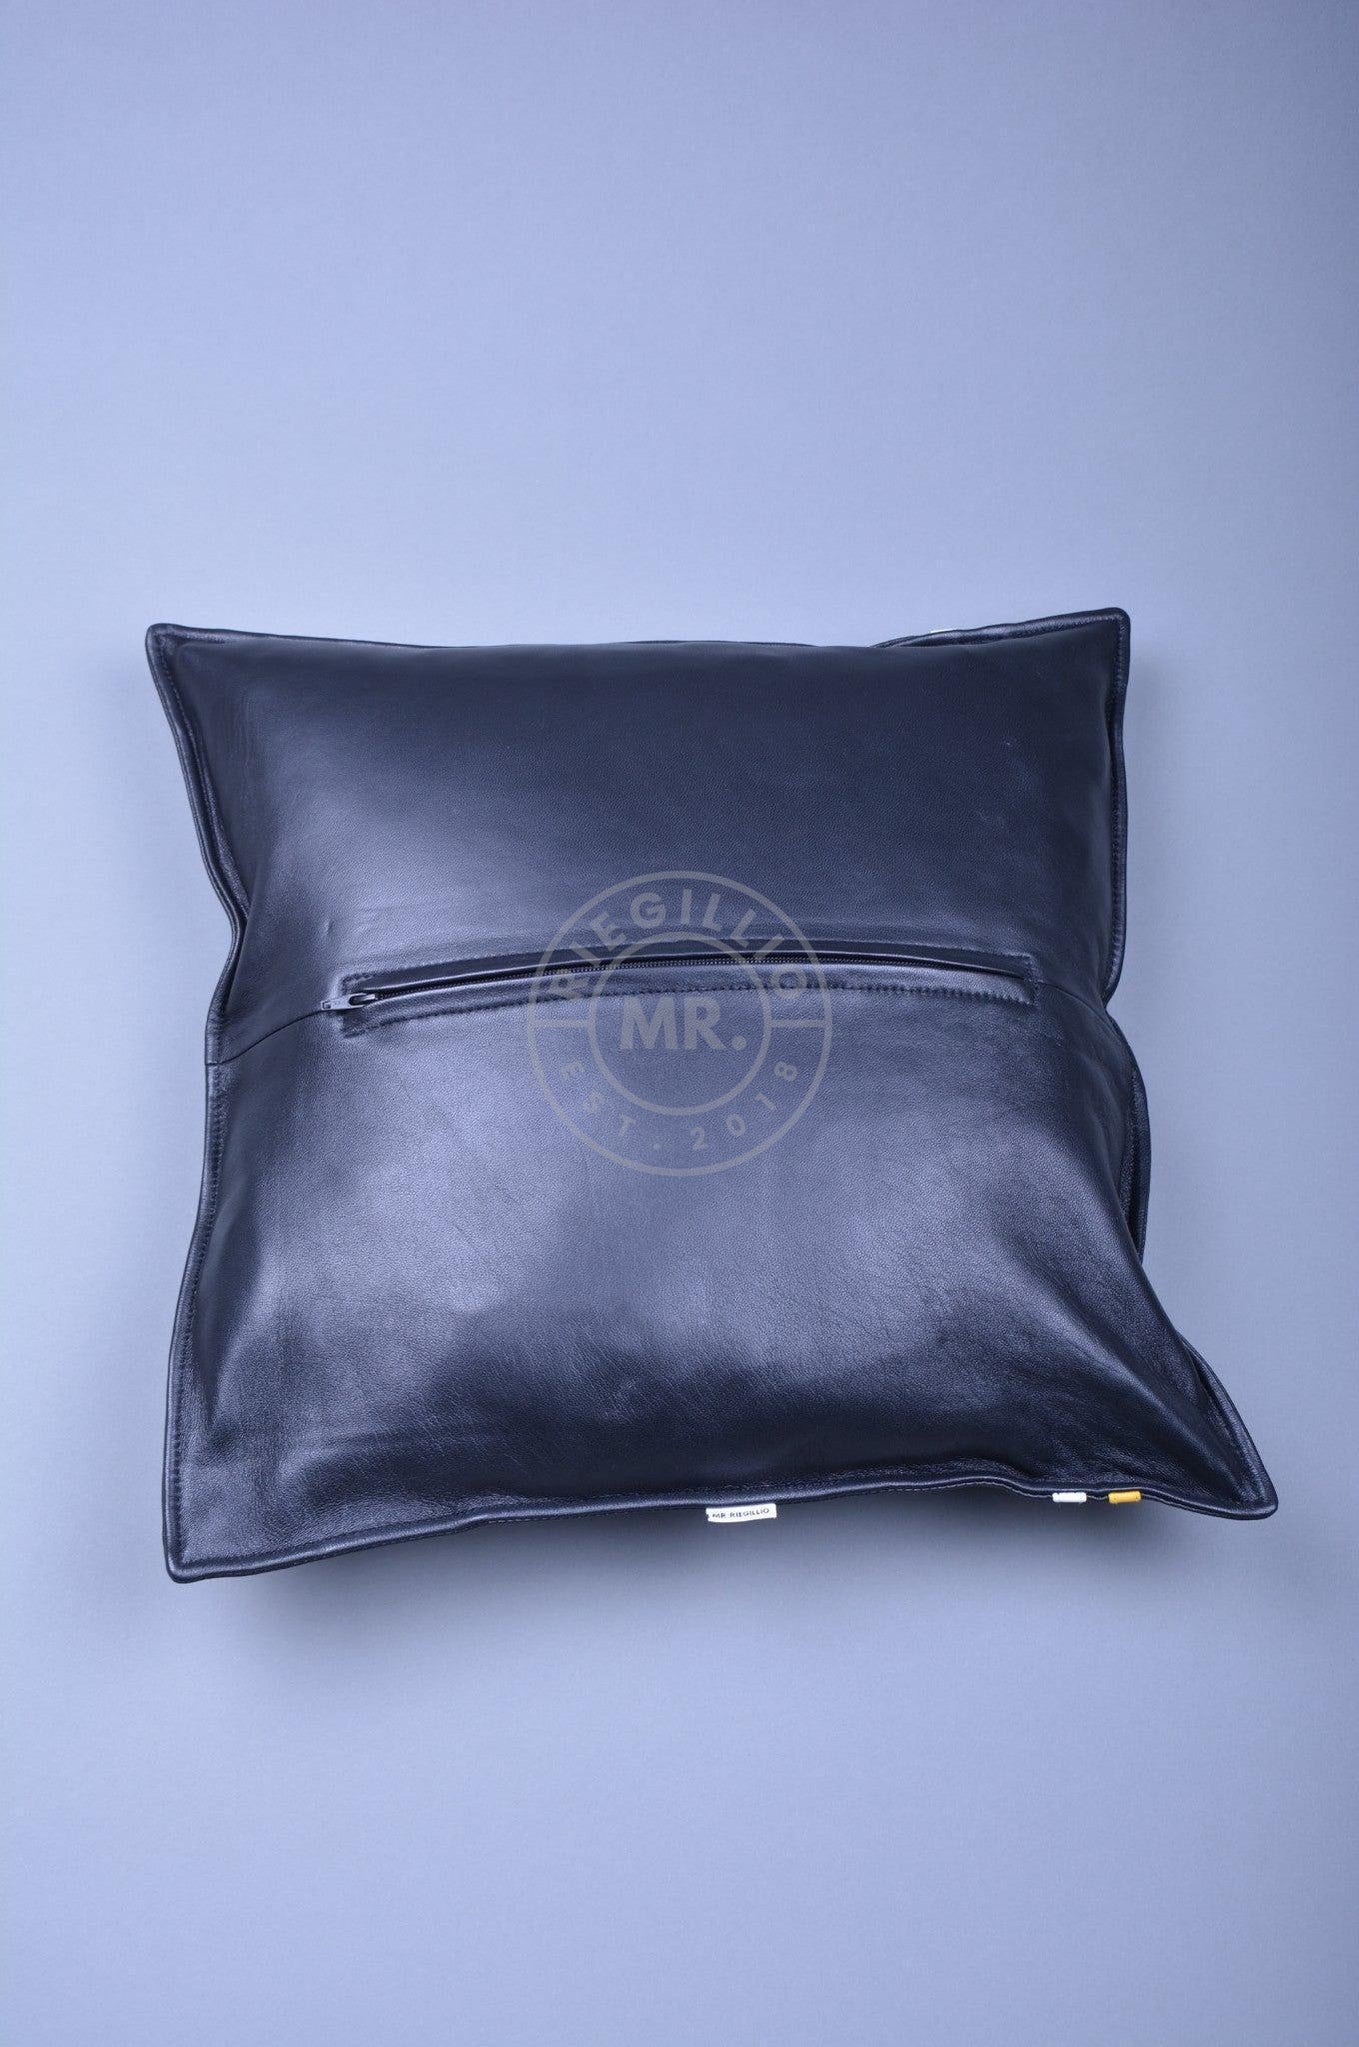 Black Leather Pillow - Yellow Stripe-at MR. Riegillio